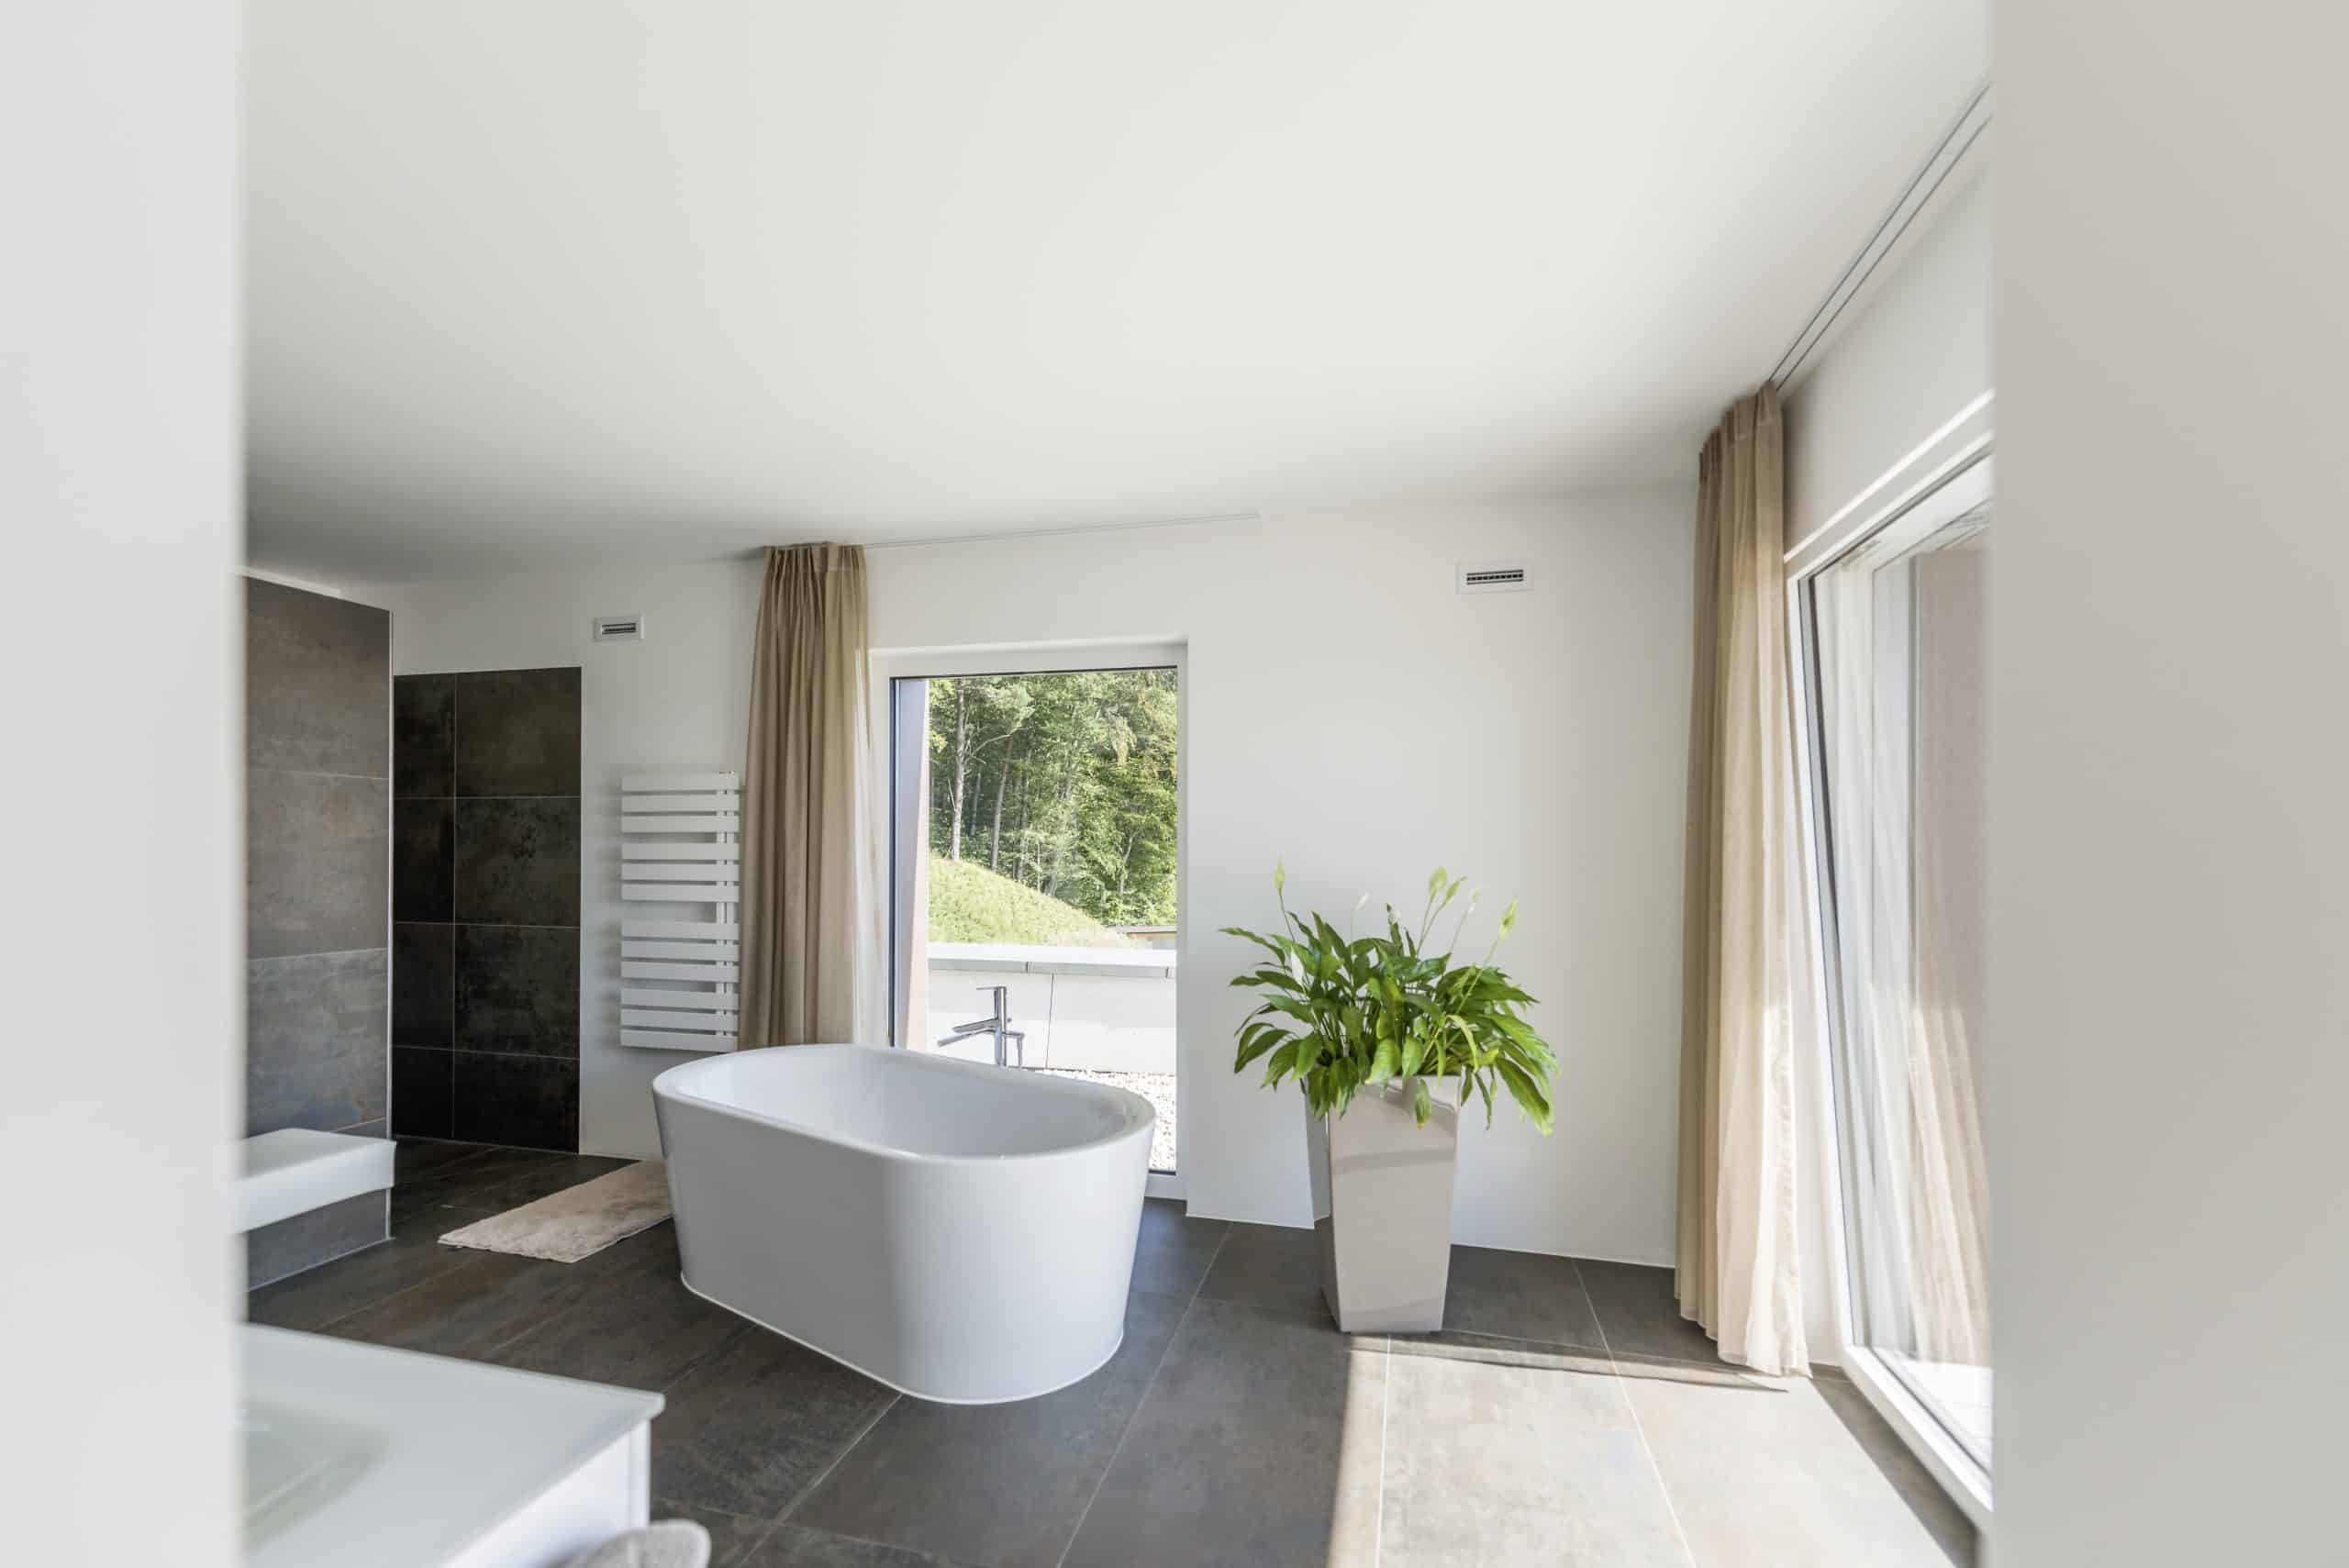 Internorm zeigt ein Badezimmer mit großem Fenster, freistehender Badewanne und beige Vorhänge.